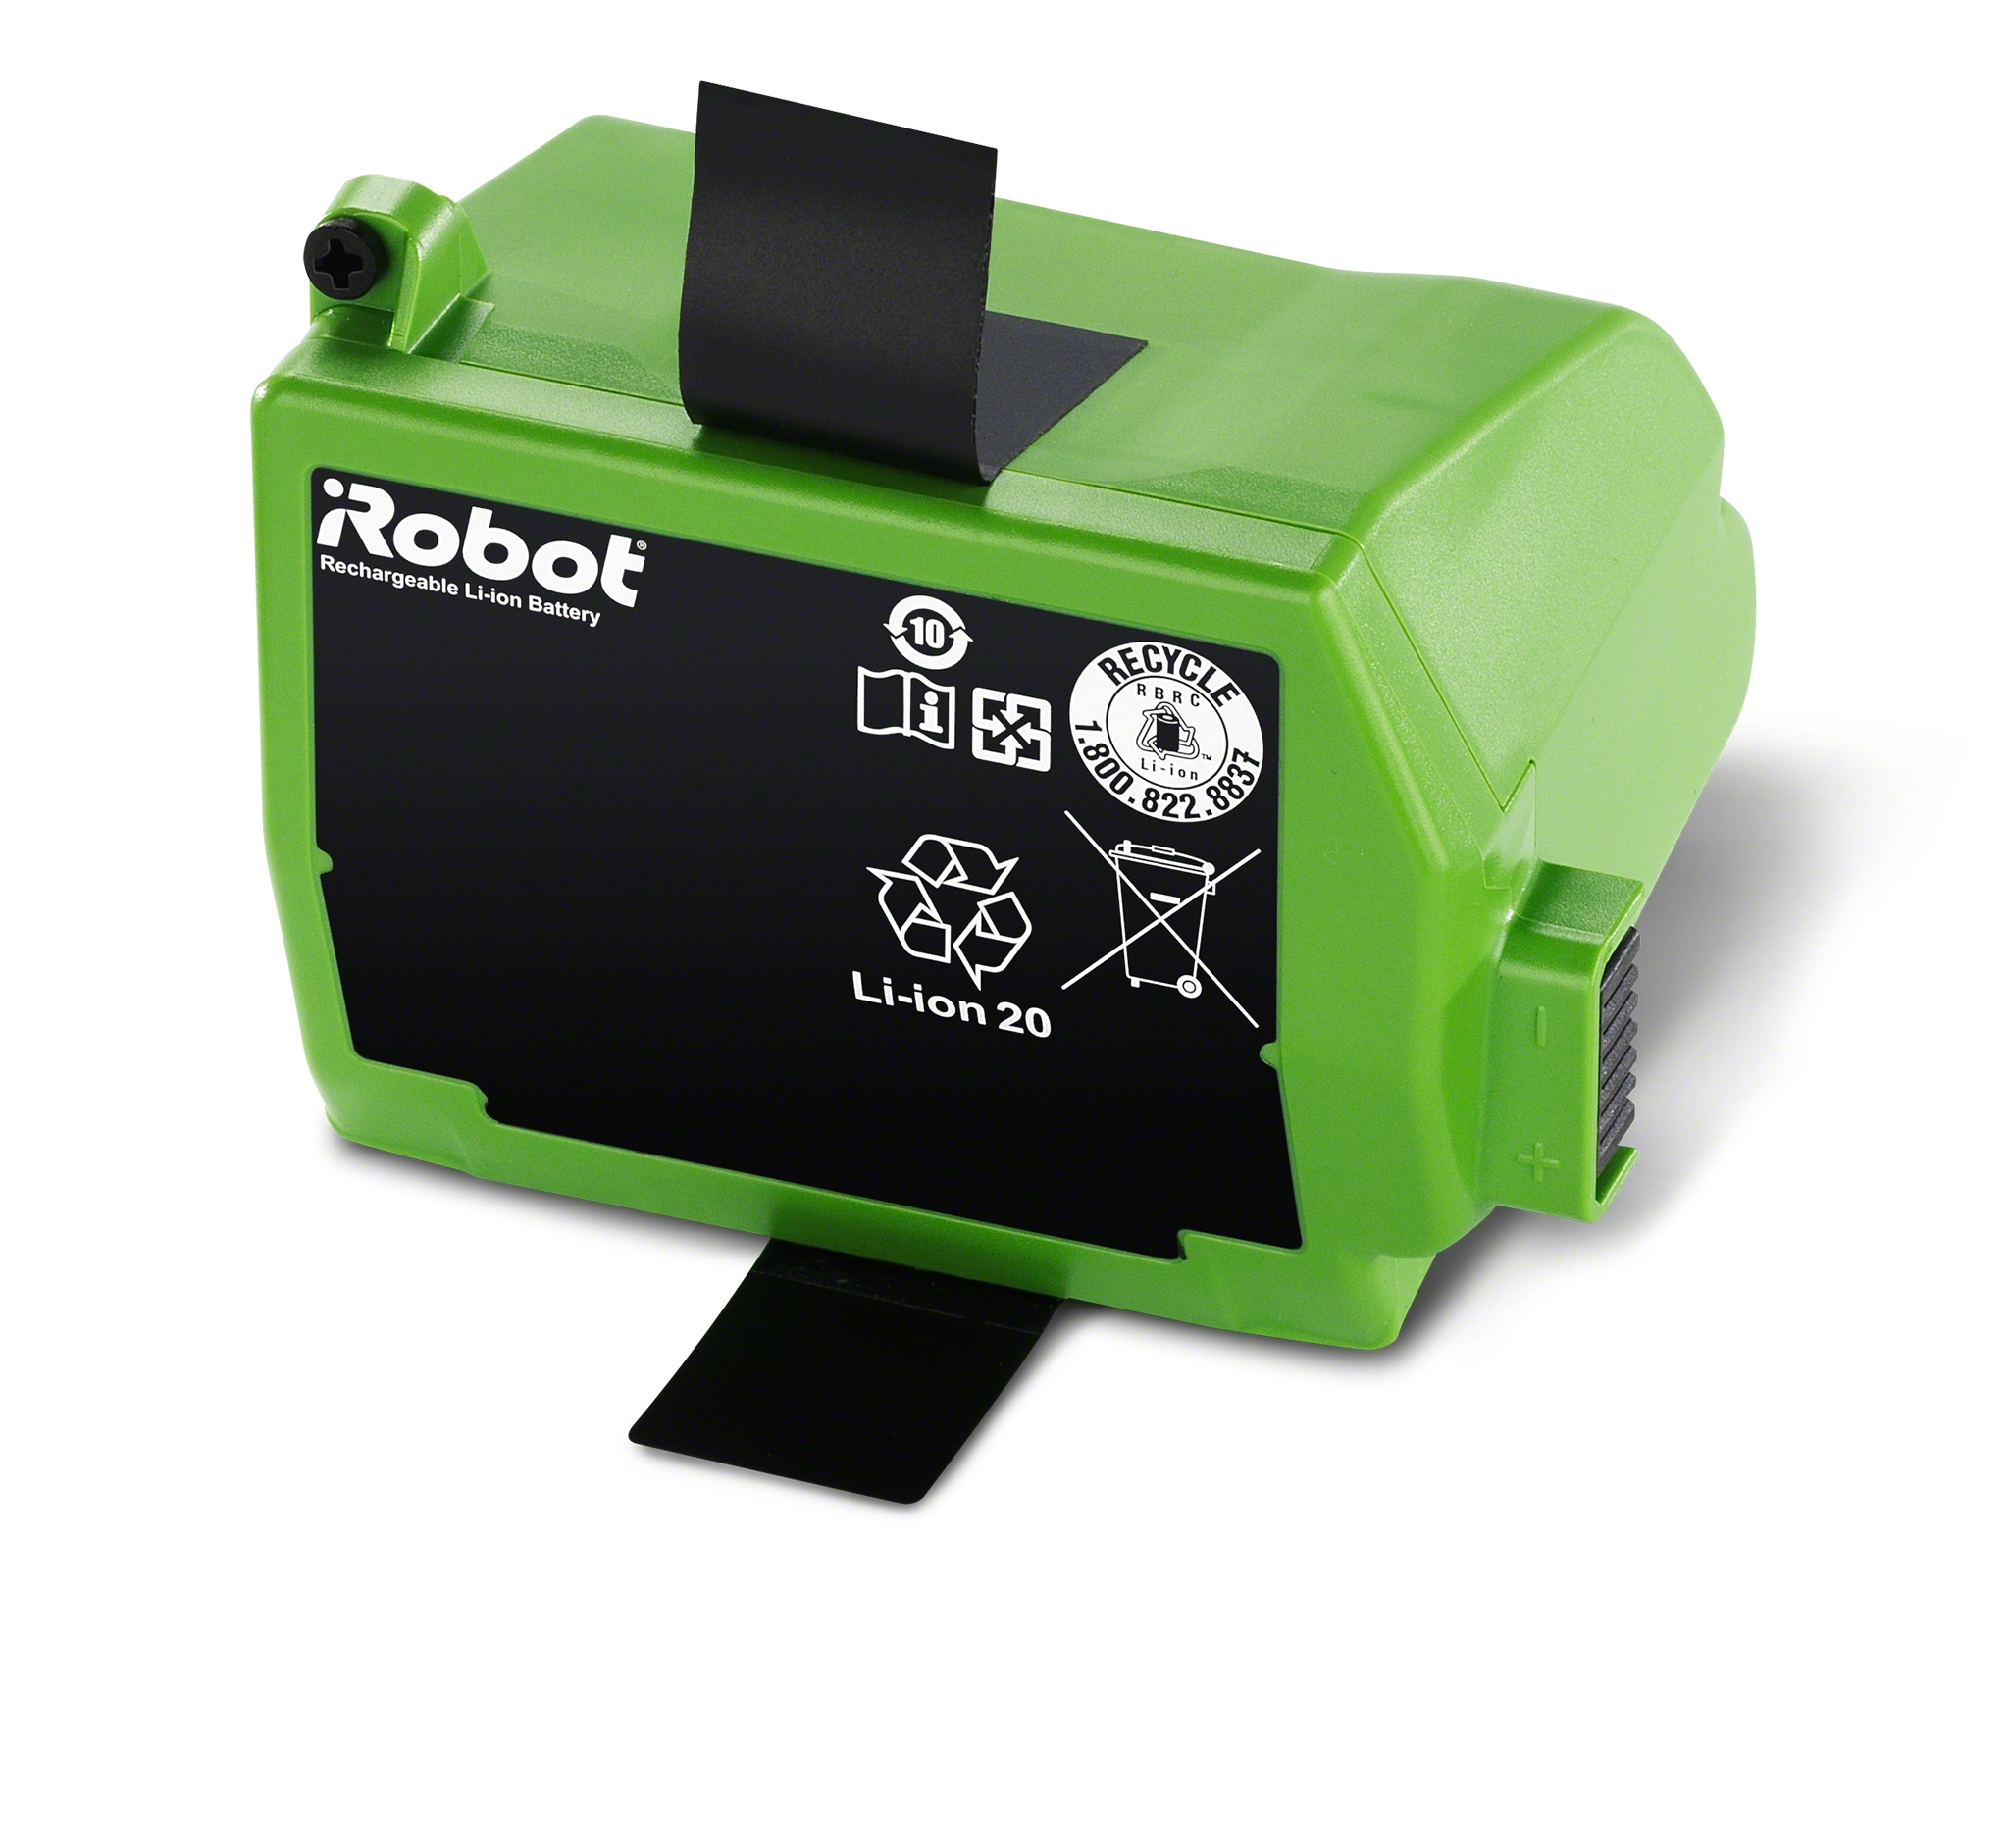 Kit cepillos repuestos dobles de Accesorios para iRobot Roomba Serie 800 900  – , Batería para Roomba, Recambios para Roomba, Garantía  Española